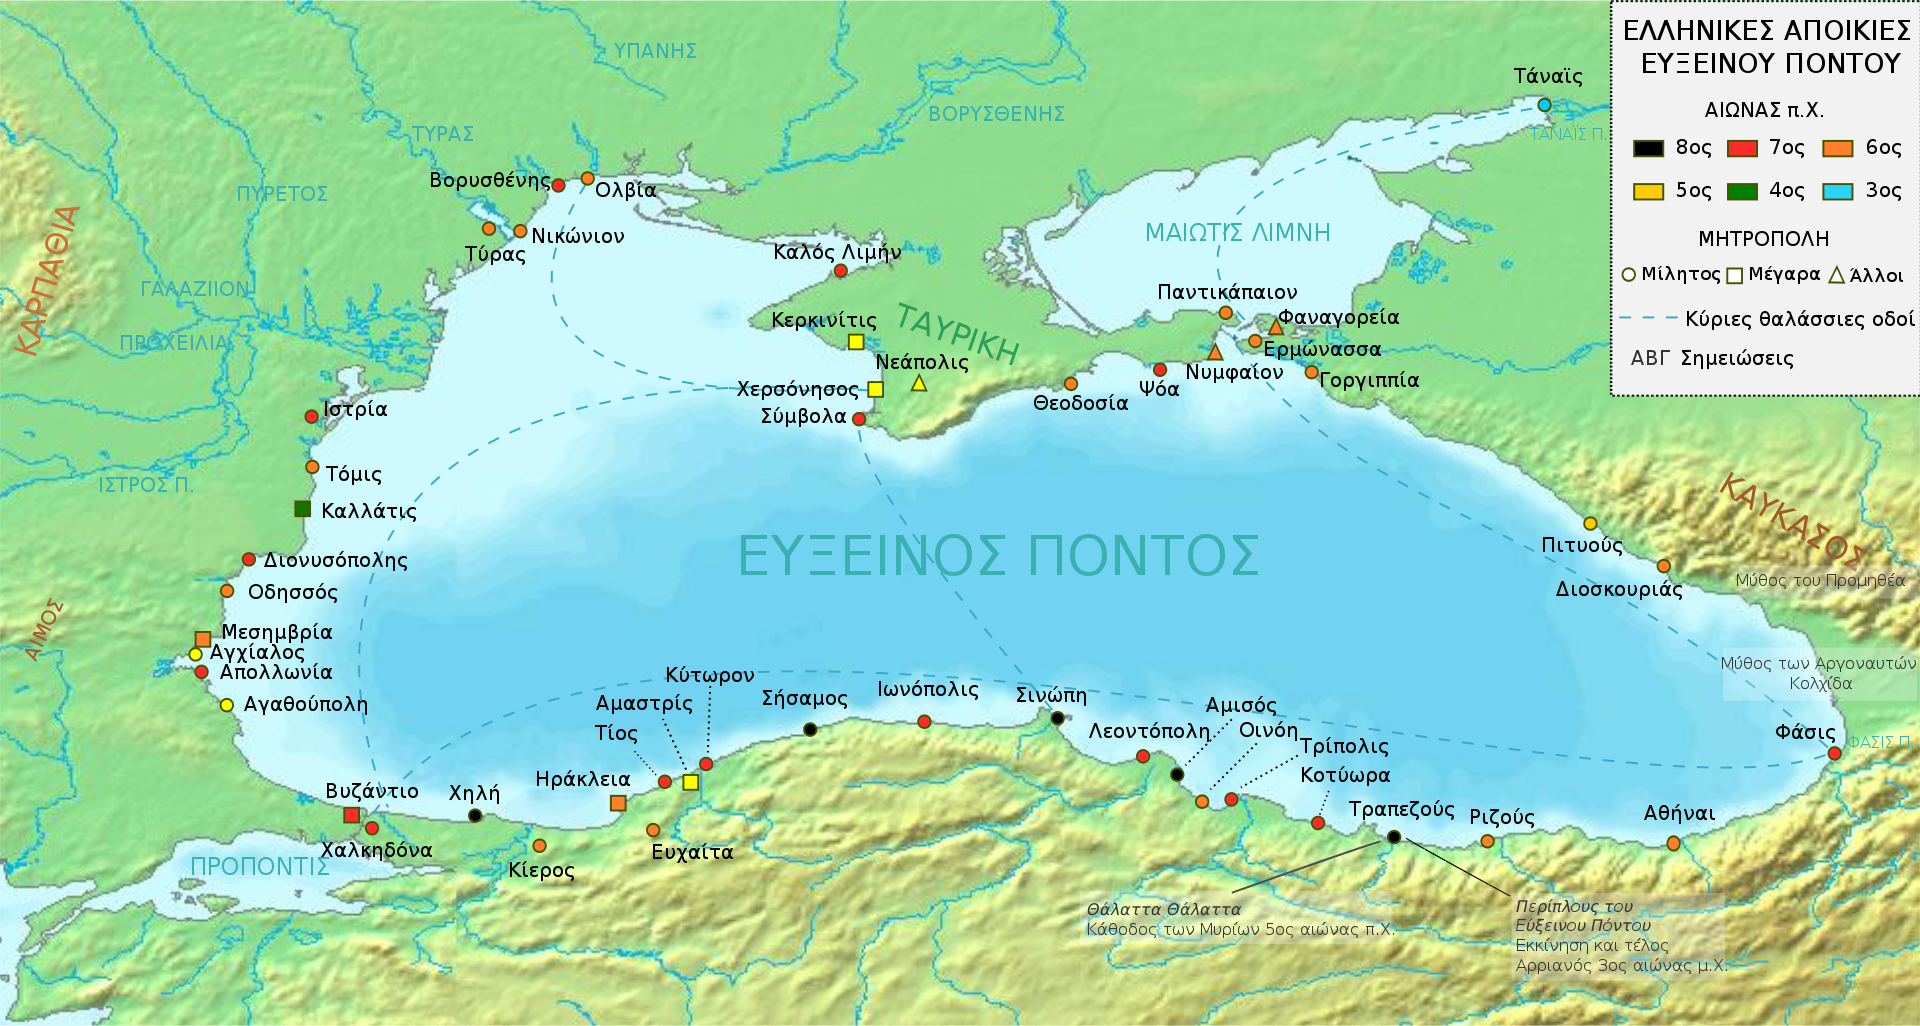 Εύξεινος Πόντος, οι Ελληνικές αποικίες και ο πολυσύχναστος υδάτινος δρόμος στο σταυροδρόμι του αρχαίου κόσμου